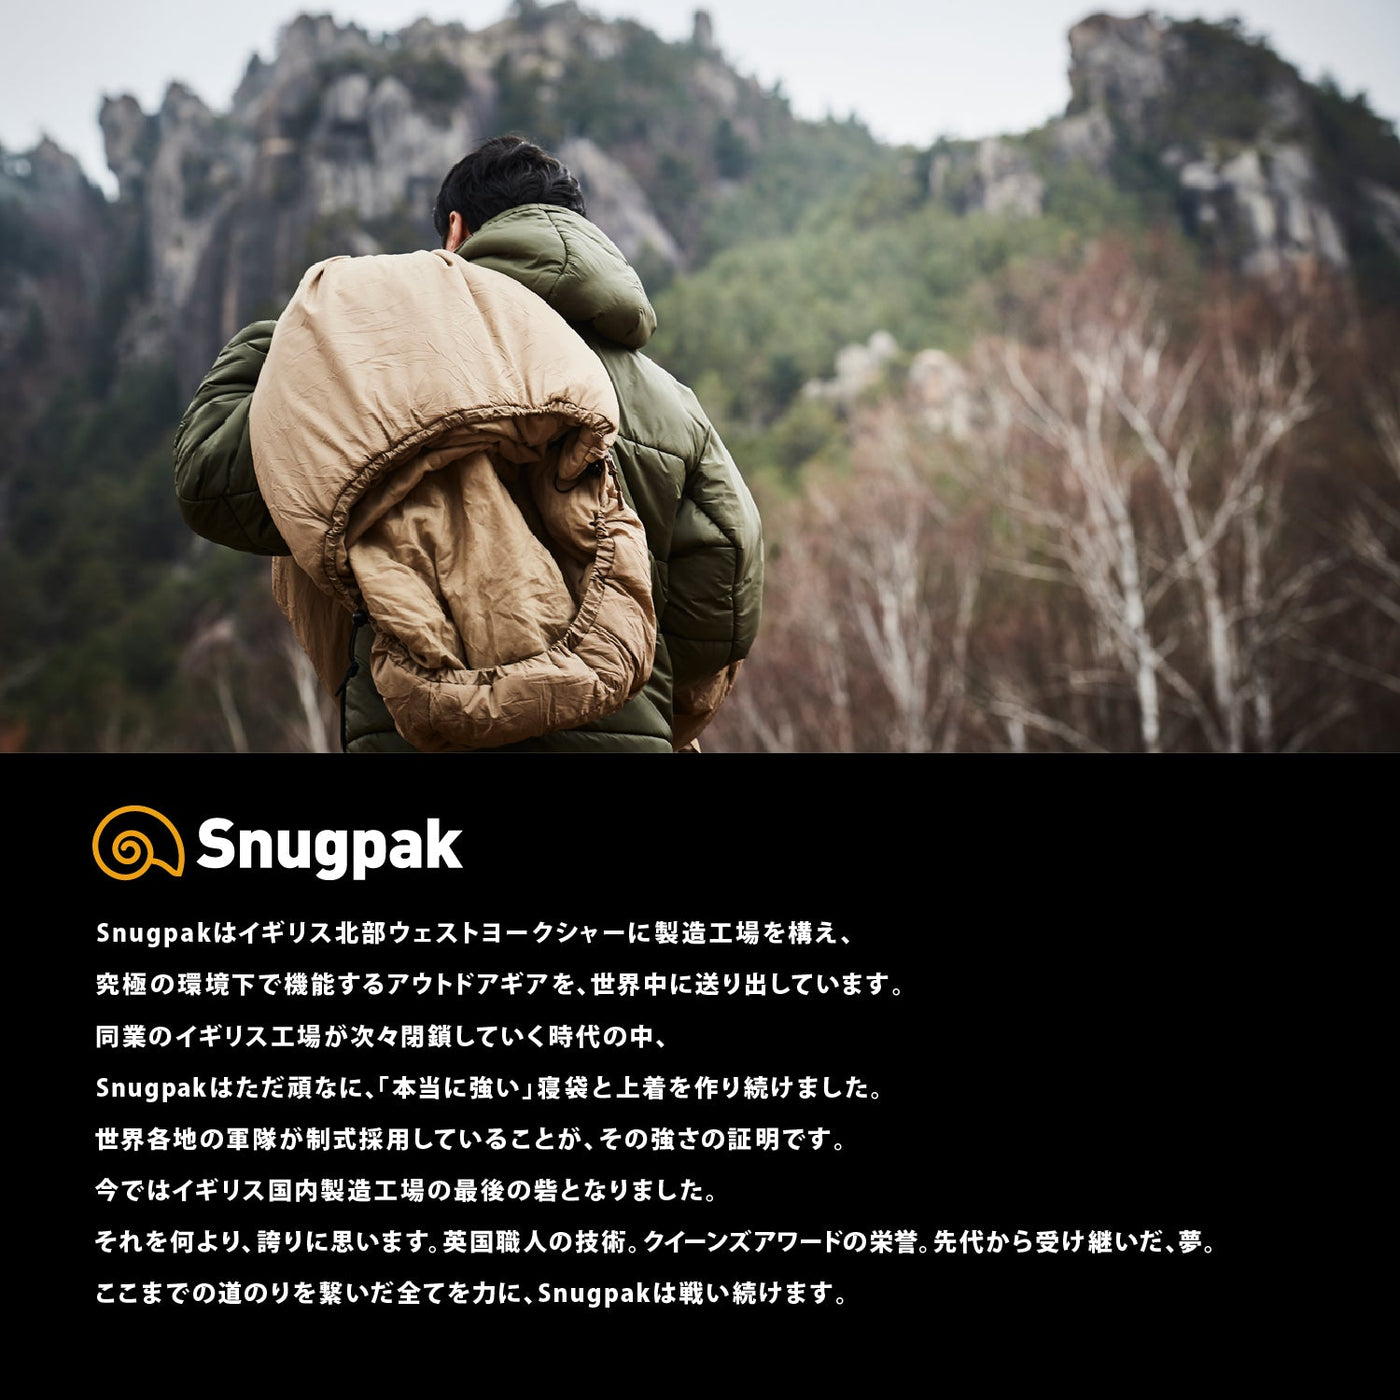 スナグパック コンプレッションサック ミディアムサイズ (デザートタン) Snugpak